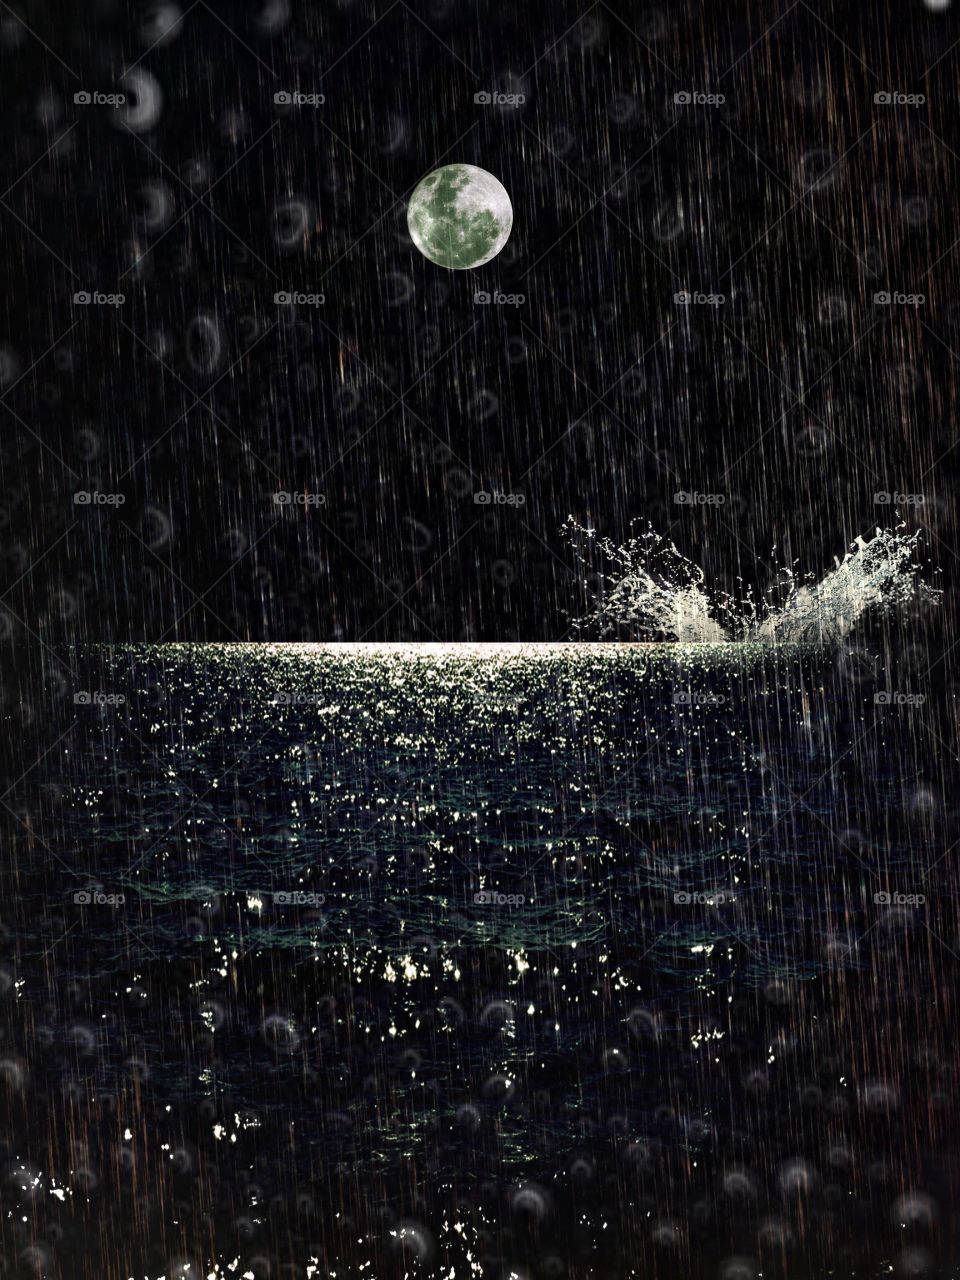 Moonlight splash
